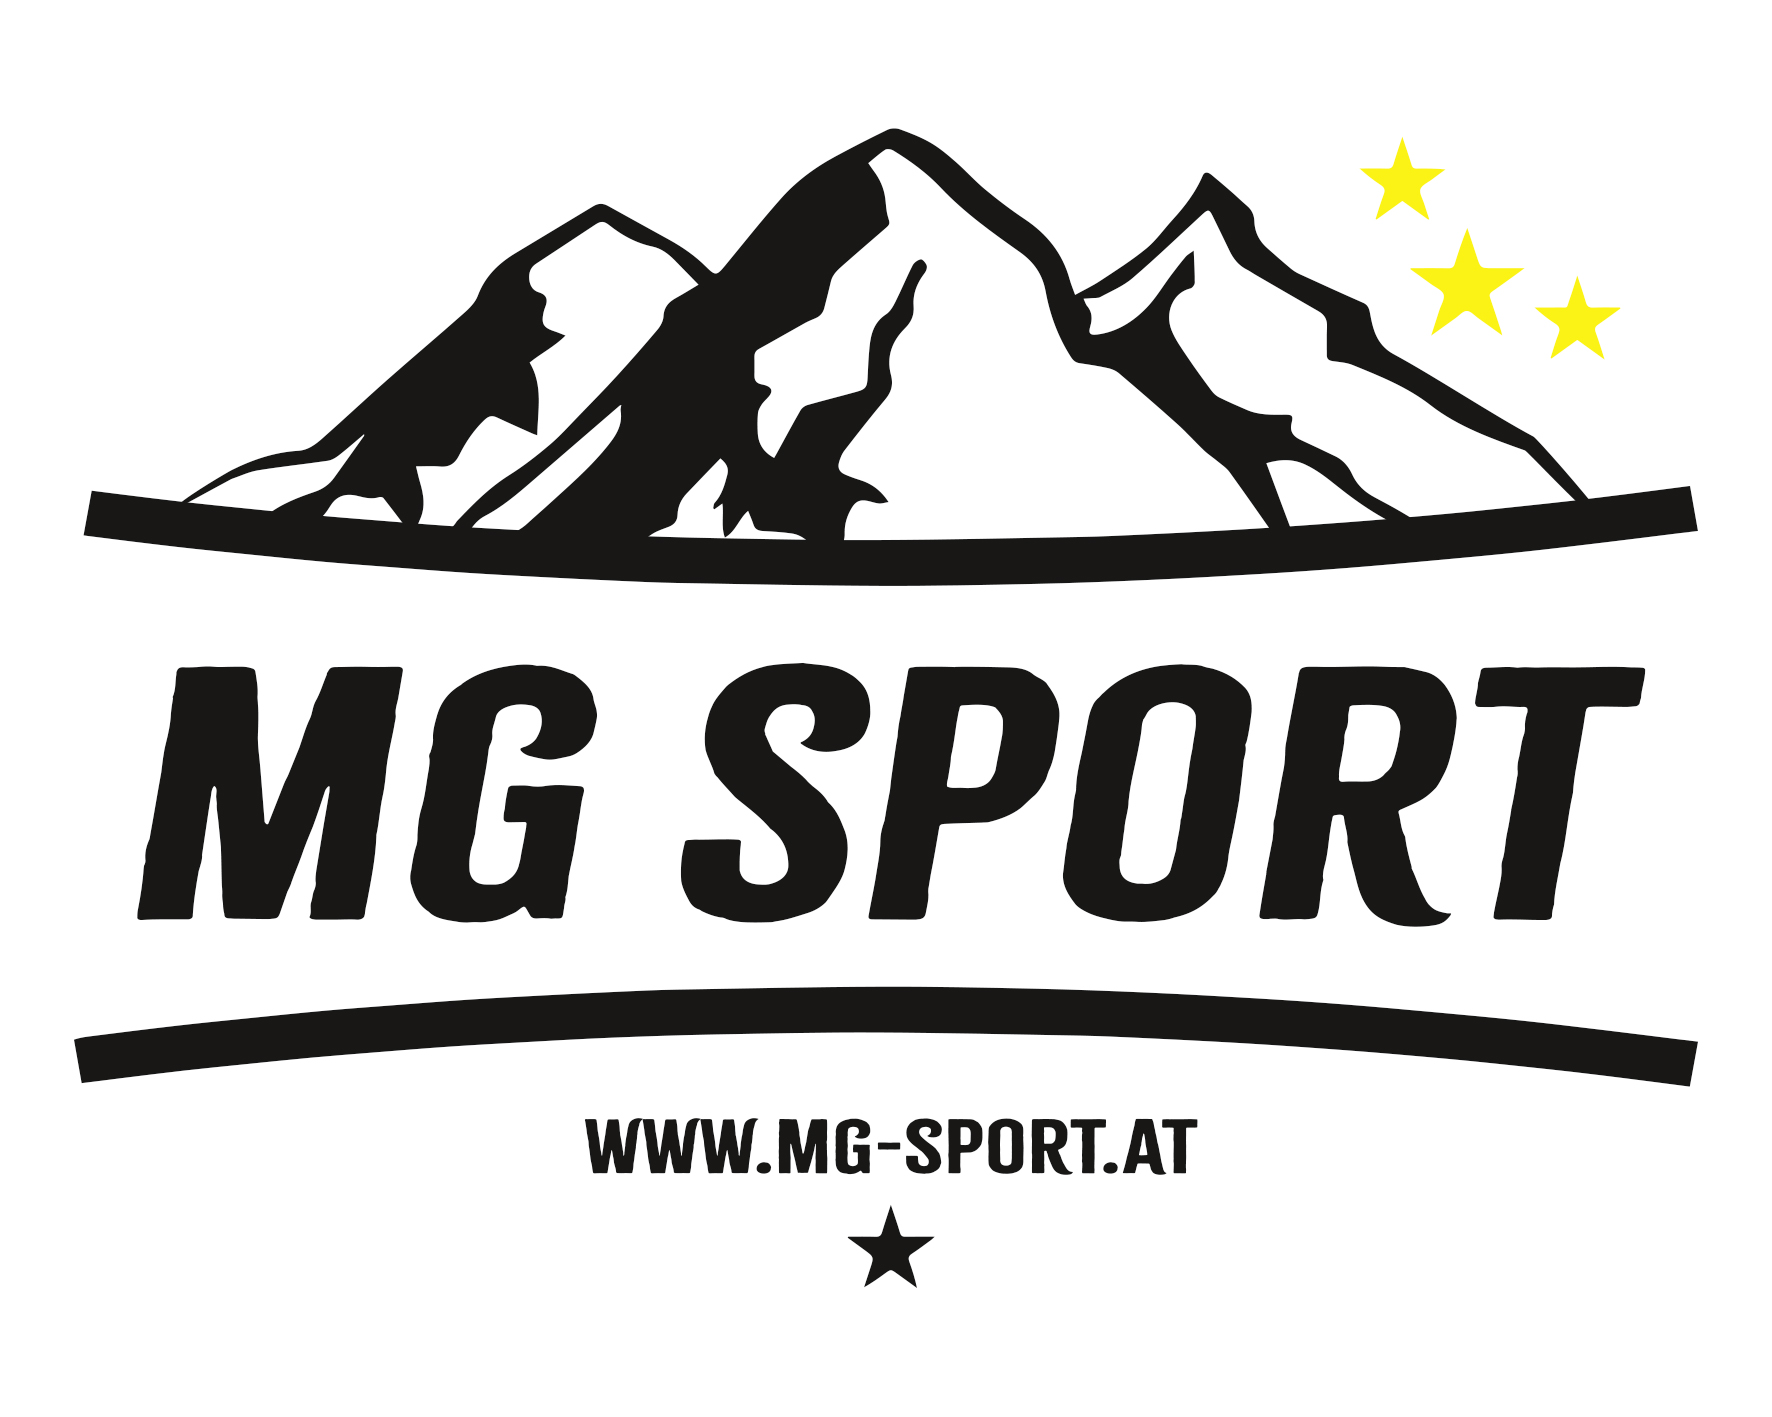 (c) Mg-sport.at